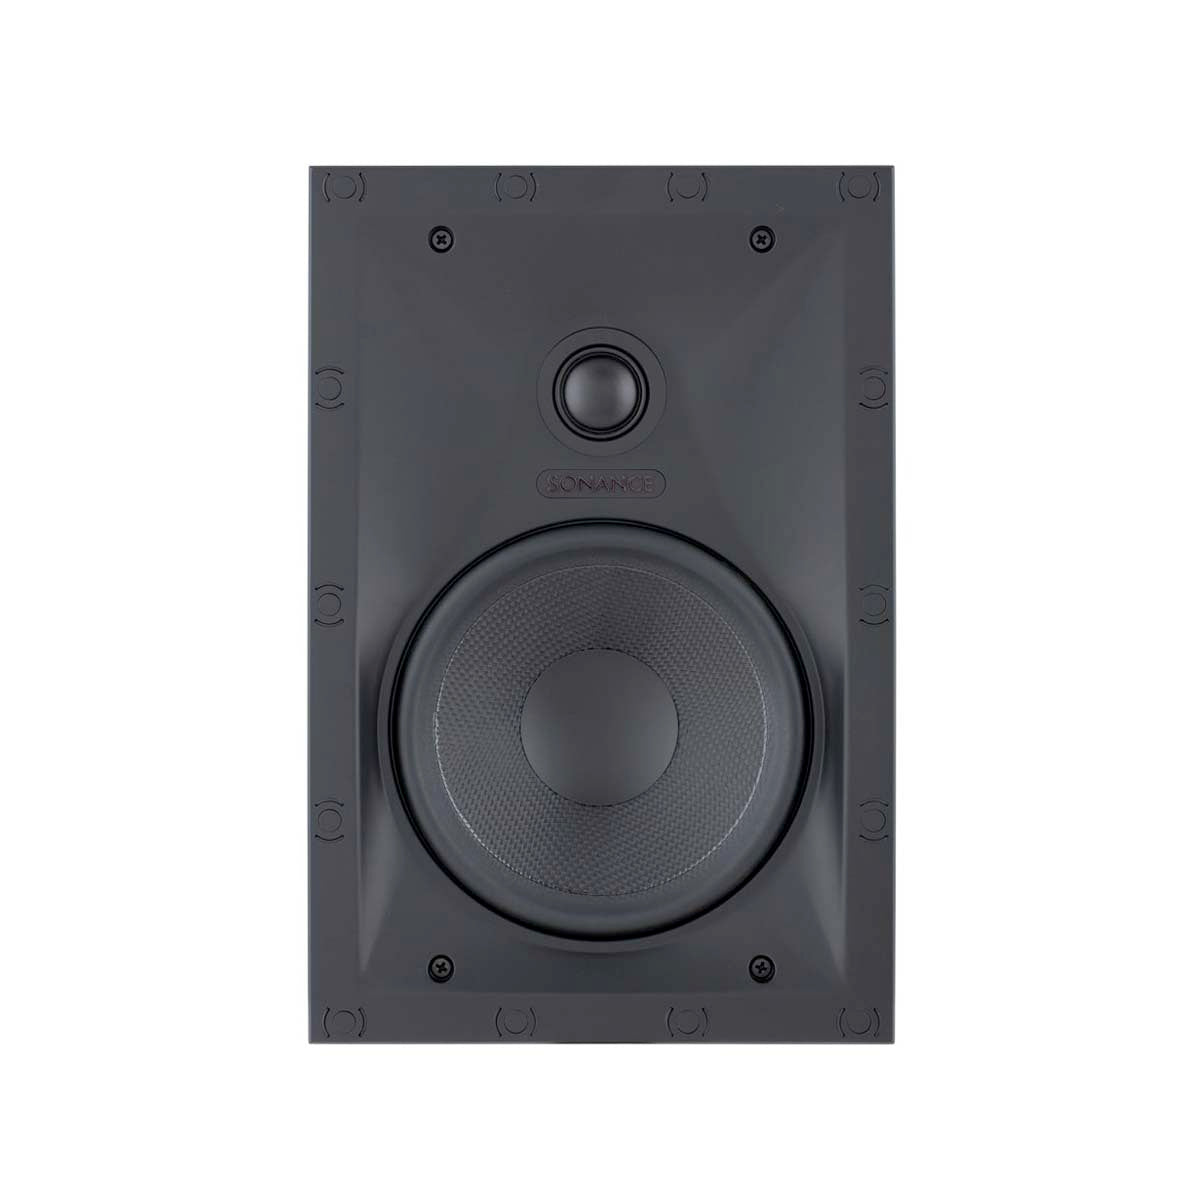 Sonance VP62 6.5" Rectangular Speakers